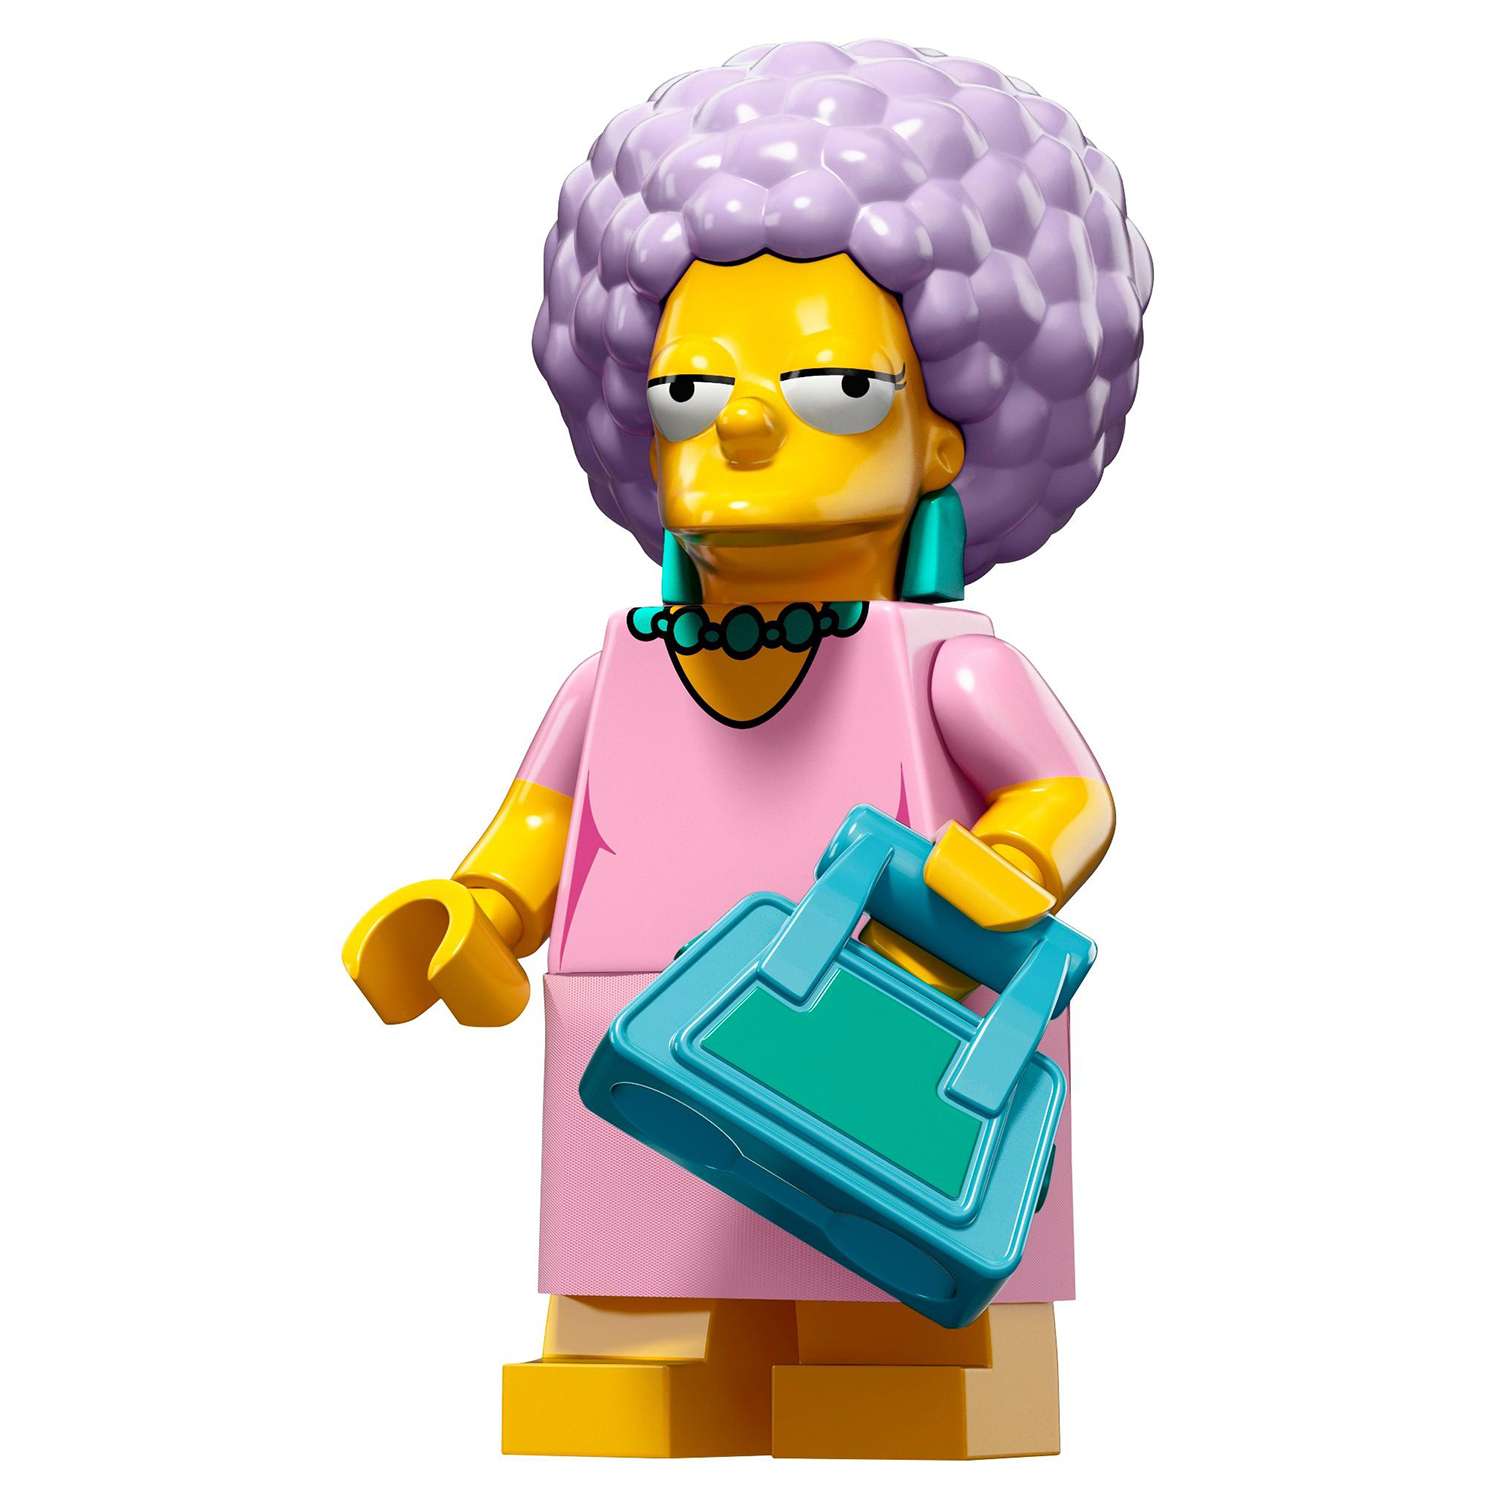 Конструктор LEGO Minifigures Минифигурки LEGO® Серия «Симпсоны» 2.0 (71009) - фото 17